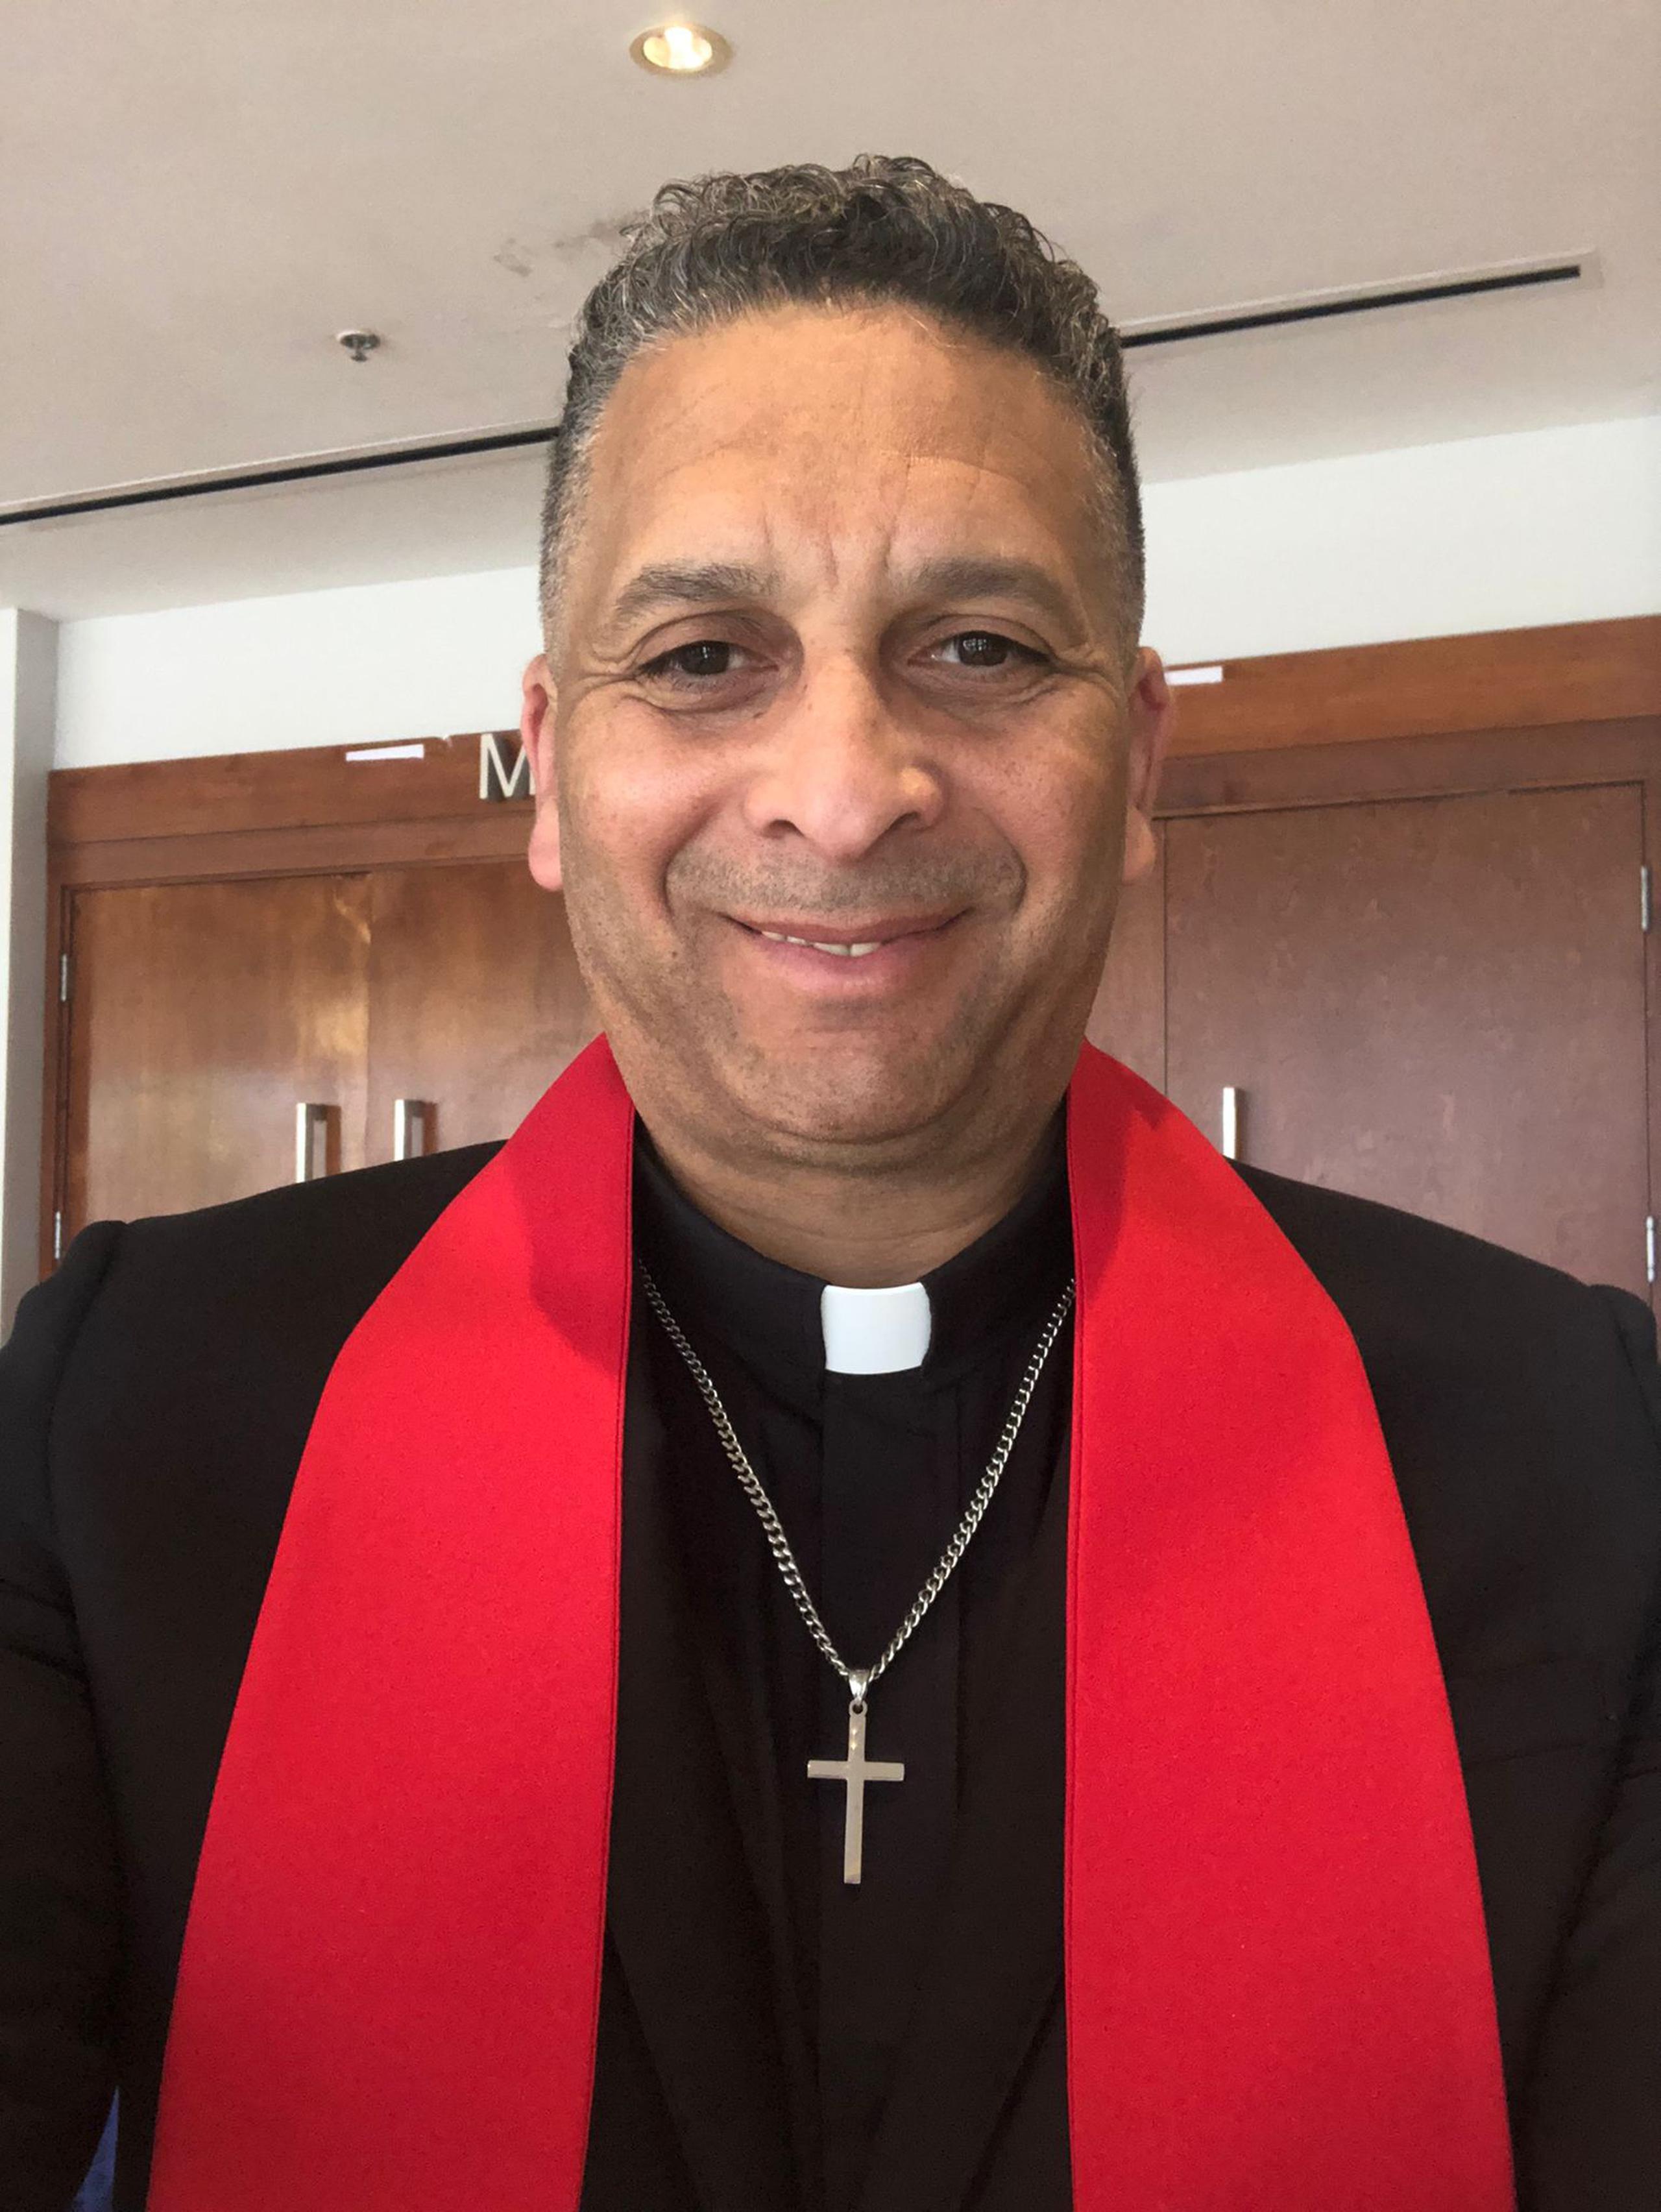 Willie de Jesús fue ordenado pastor por las Asamblea de Dios y es uno de los predicadores de la Iglesia del Calvario en Orlando.